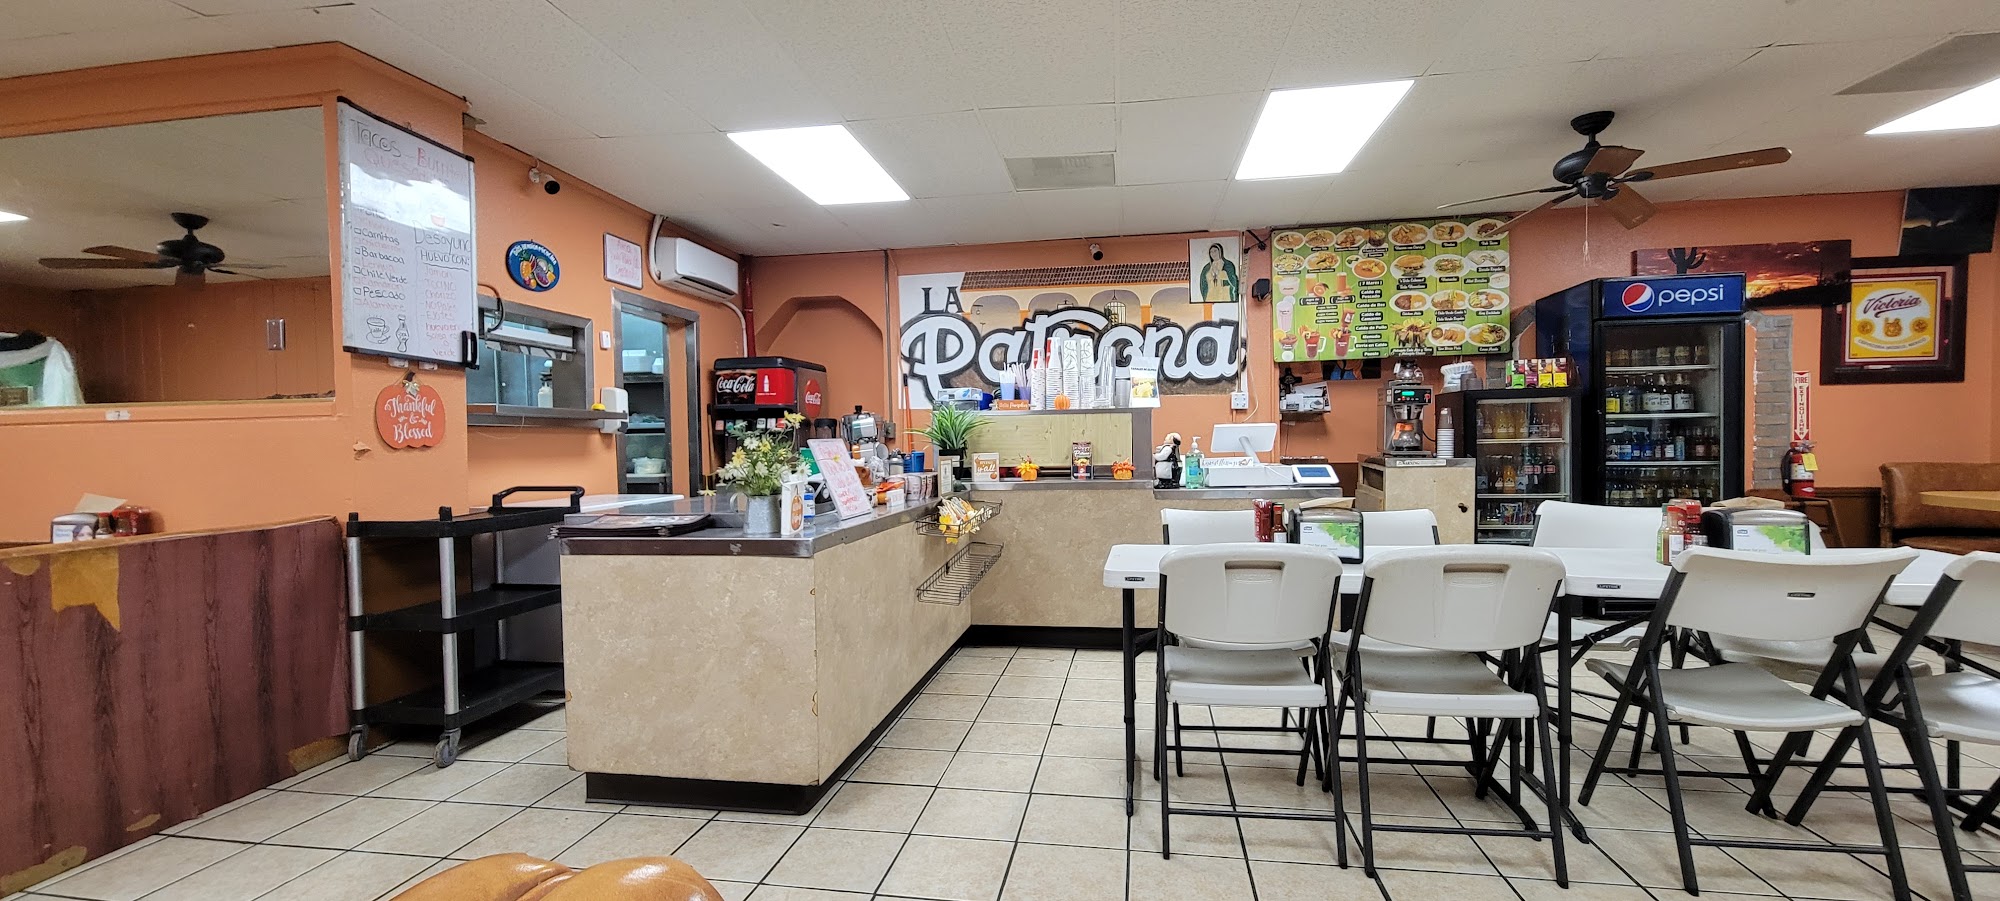 La Patrona Restaurant Y Cafe